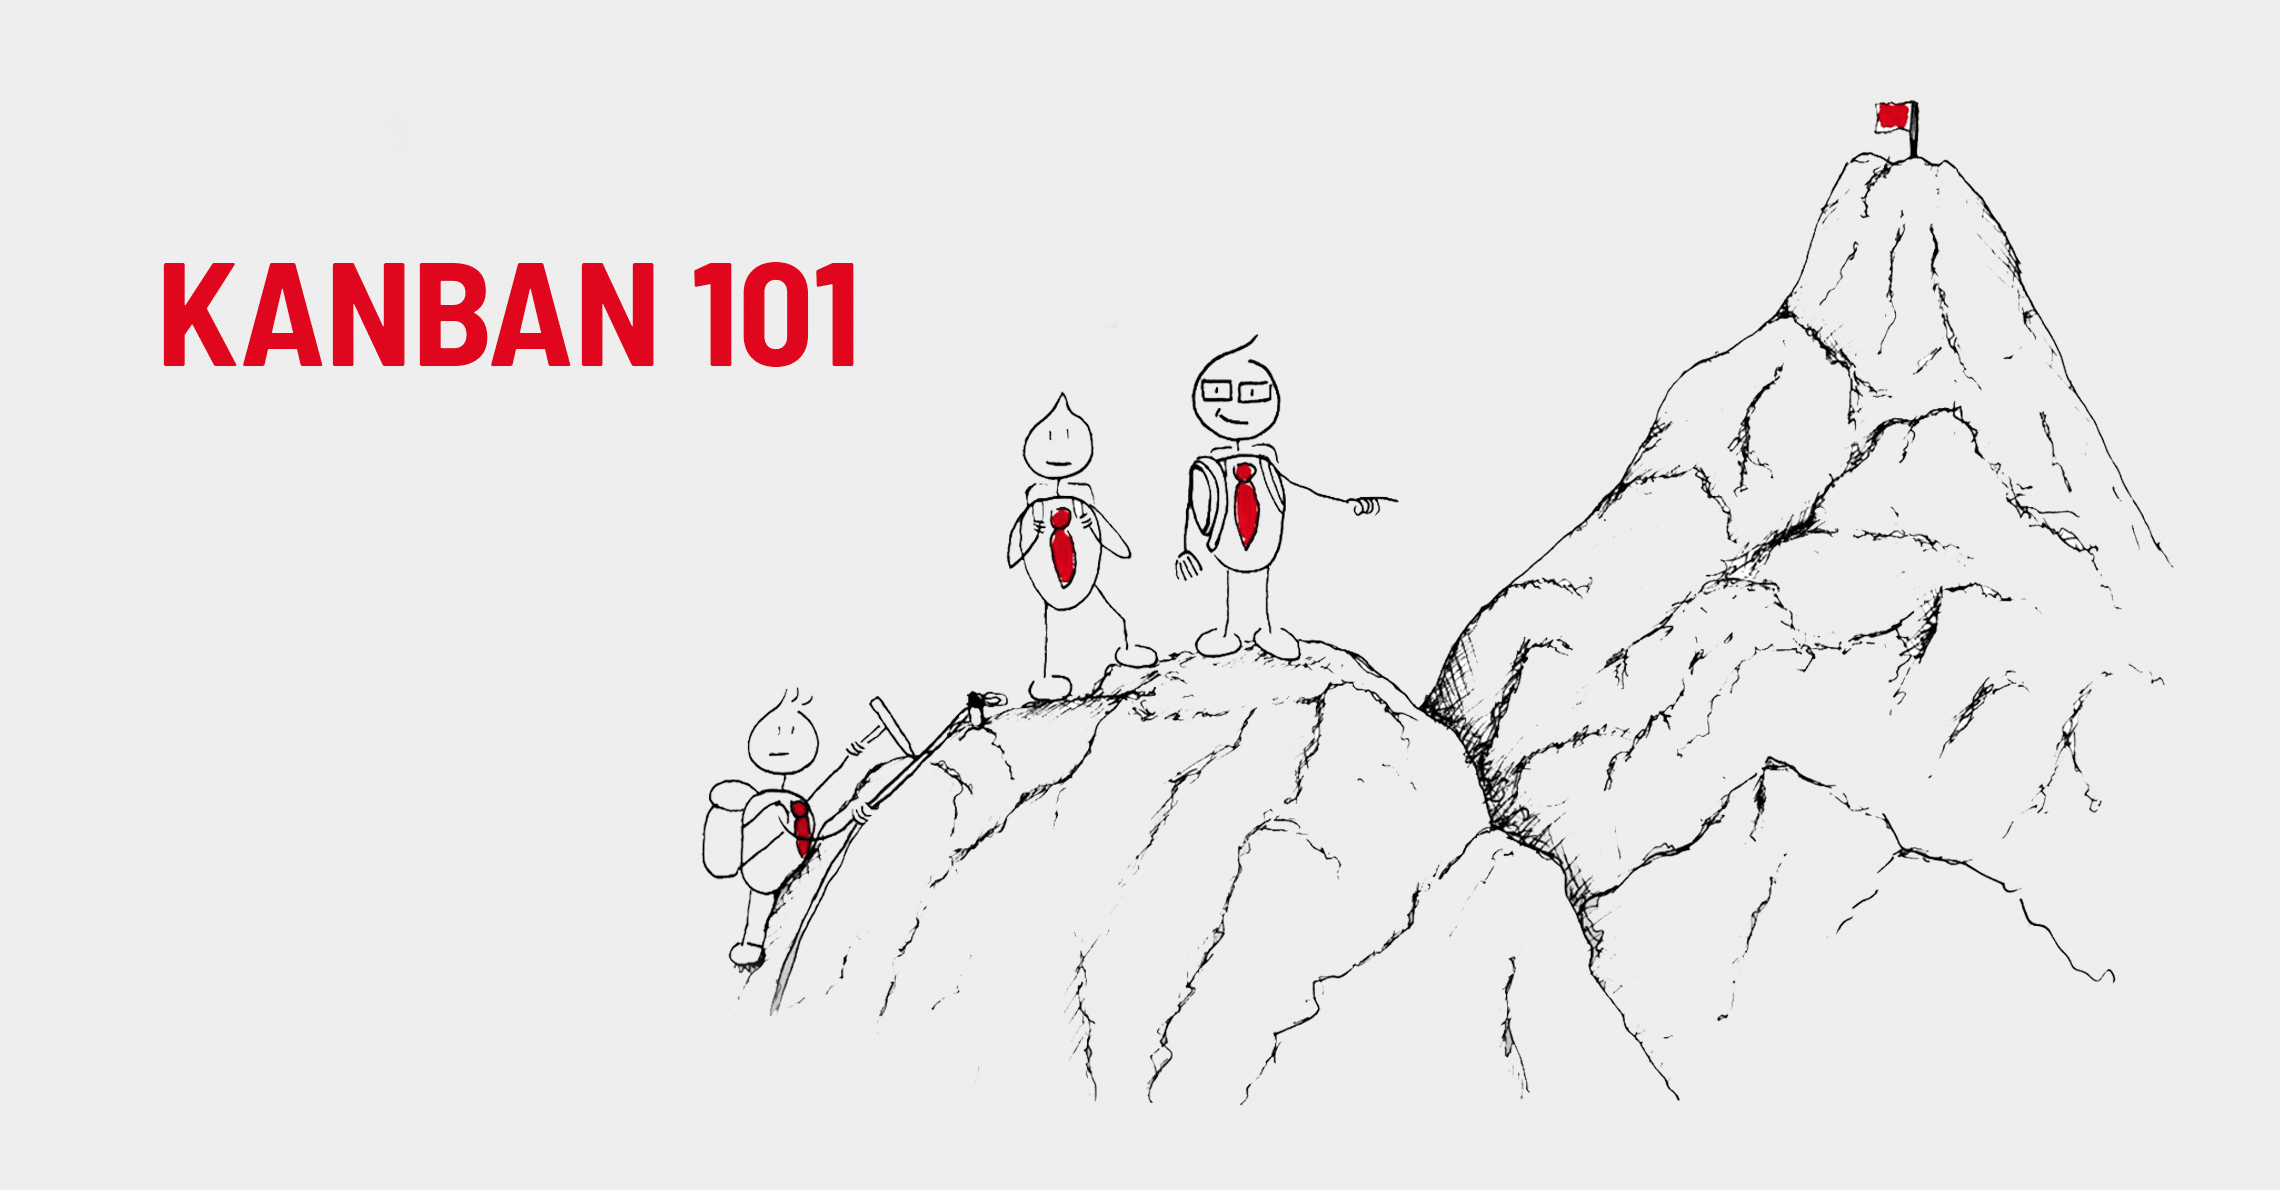 kanban 101 tekening, vx company